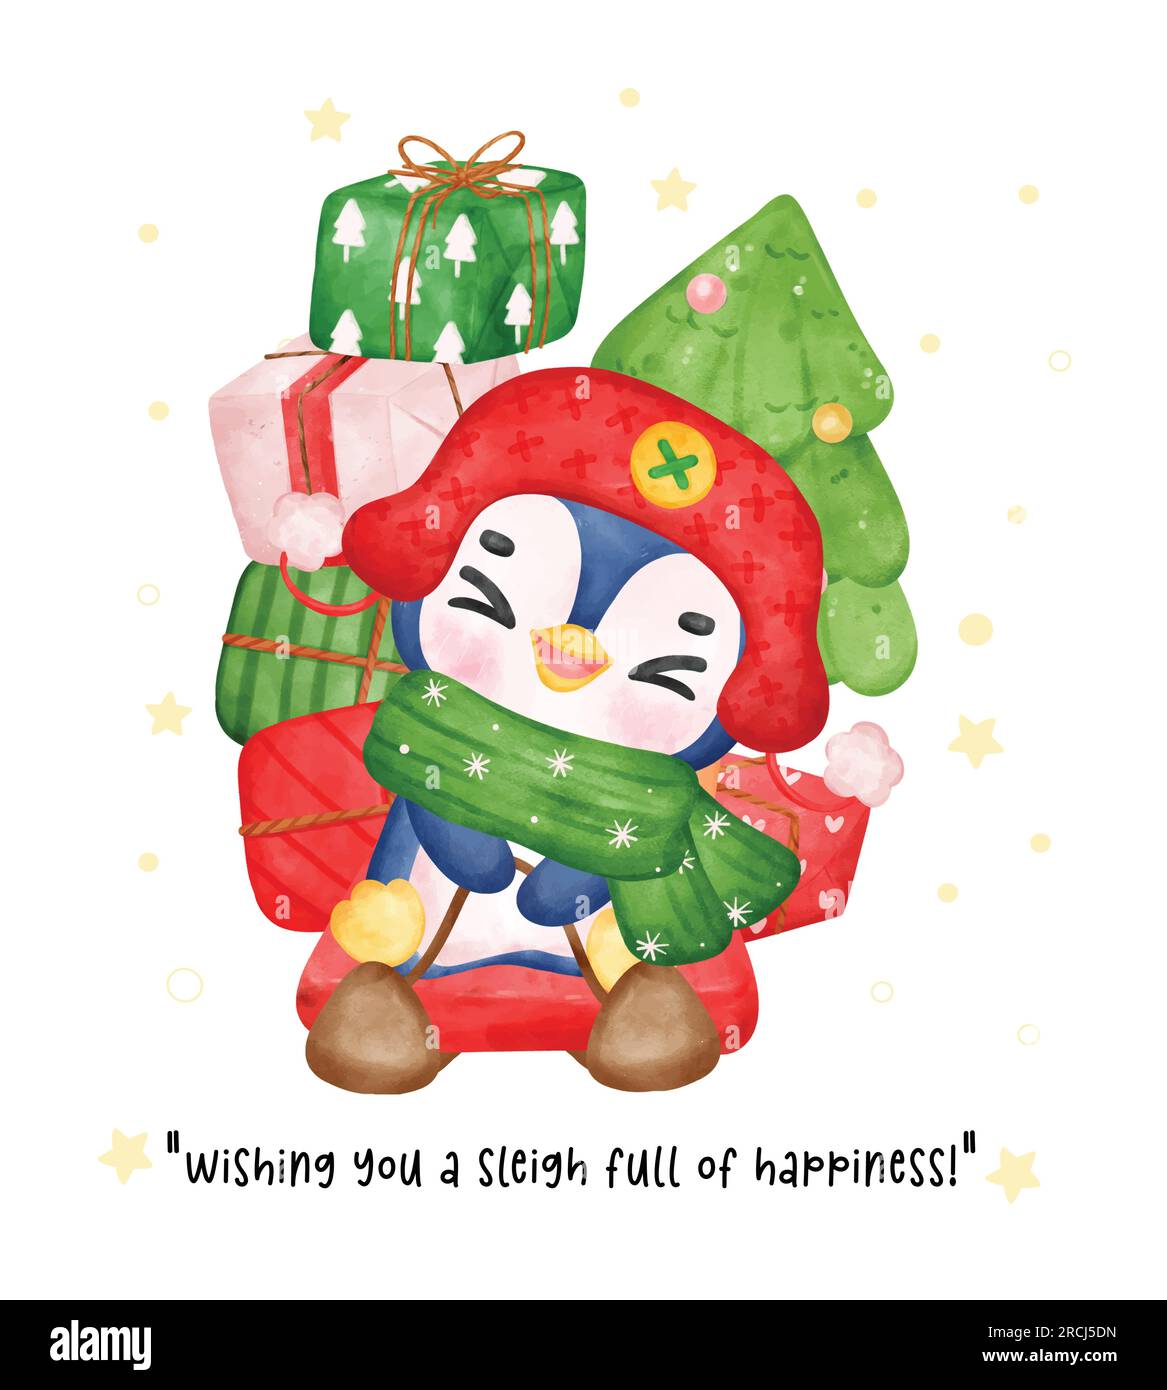 Vivi l'essenza giocosa dell'inverno con un adorabile pinguino su una slitta piena di regali. Questo acquerello natalizio ritrae il gioioso jou del pinguino Illustrazione Vettoriale